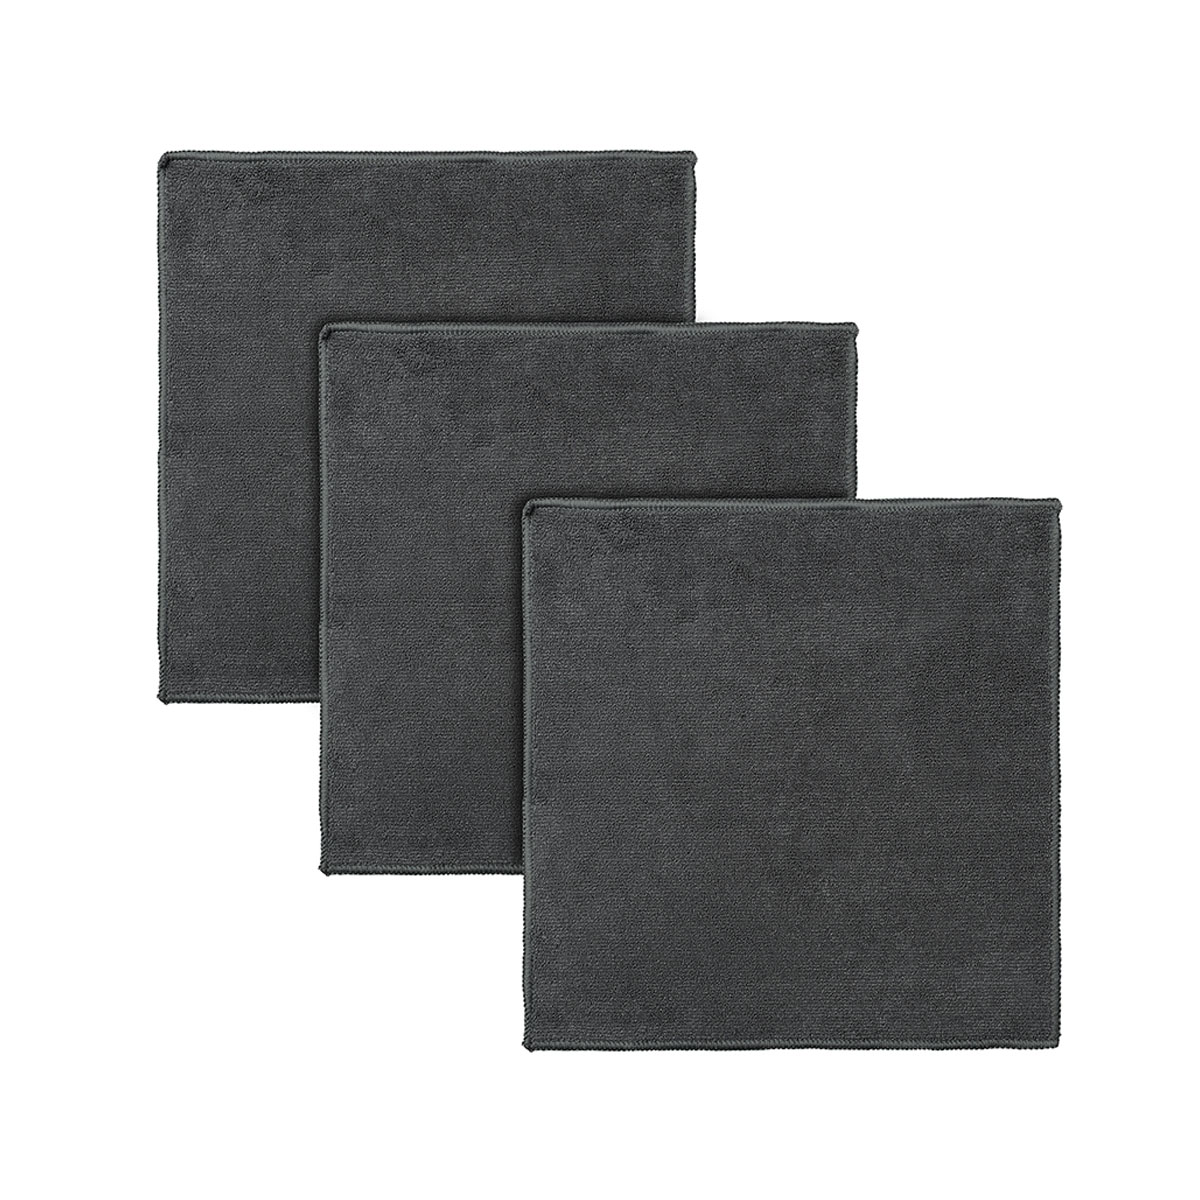 Набор салфеток из микрофибры Smart Solutions Cozy Clean 3шт, цвет темно-серый салфетка из микрофибры grand caratt пушистая универсальная 35х40 см 250 г м²